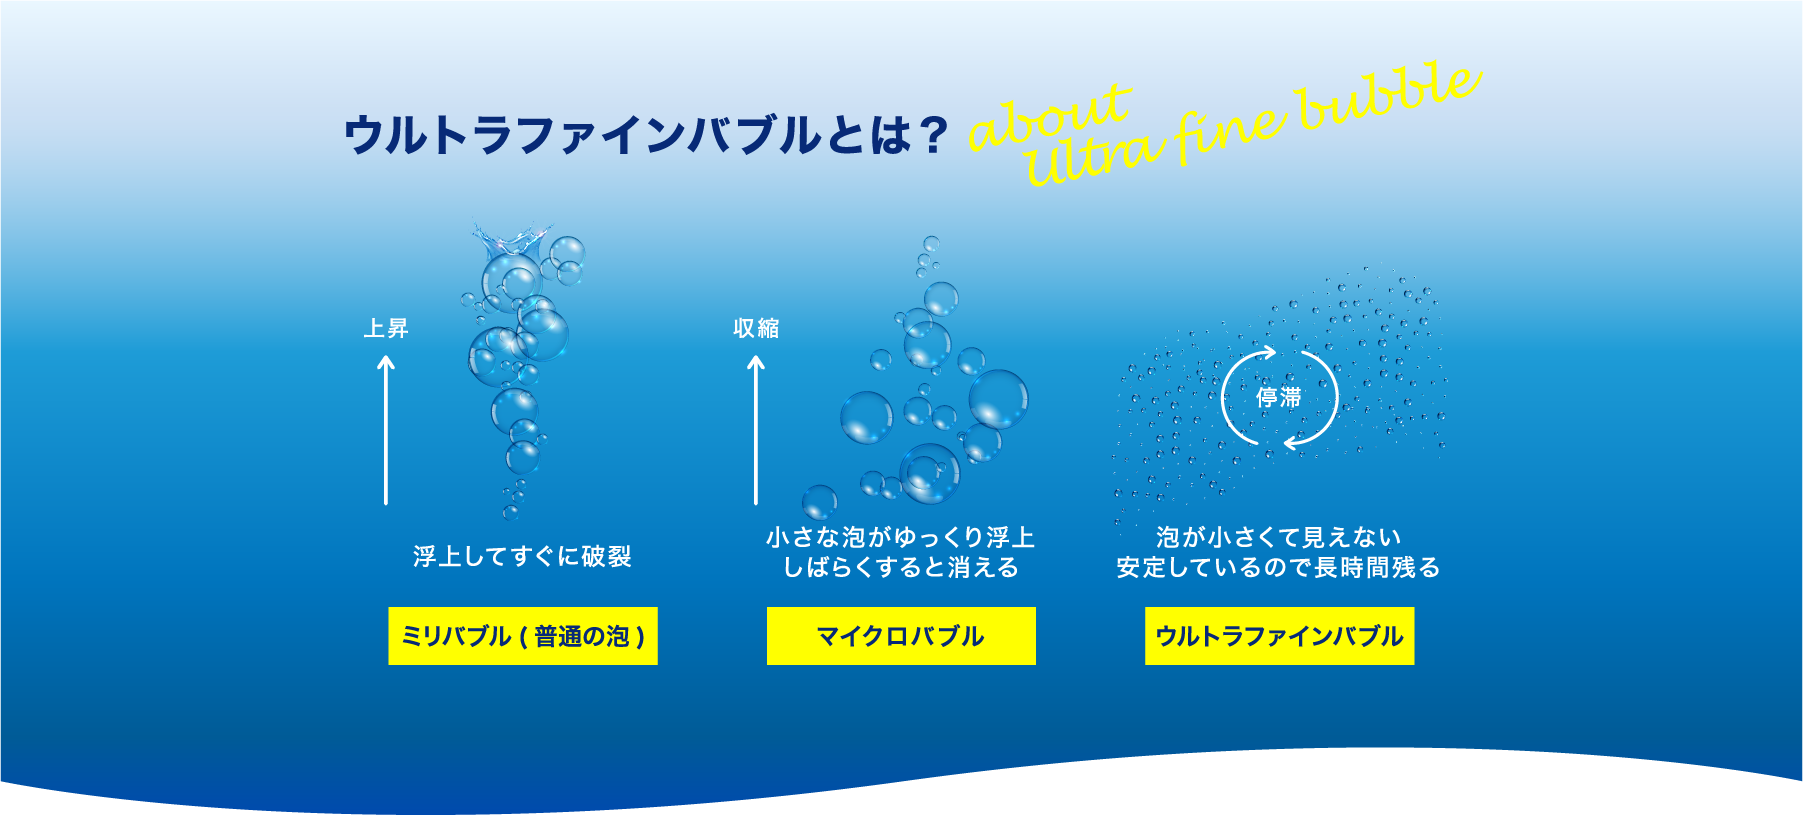 人気の ウルトラファインバブル生成ノズル UFB DUAL 13A 水道機器認証取得商品 ウルトラファインバブル水 施設設置 自宅全部の水を ウルトラファインバブルに変える ウルトラファインバブル